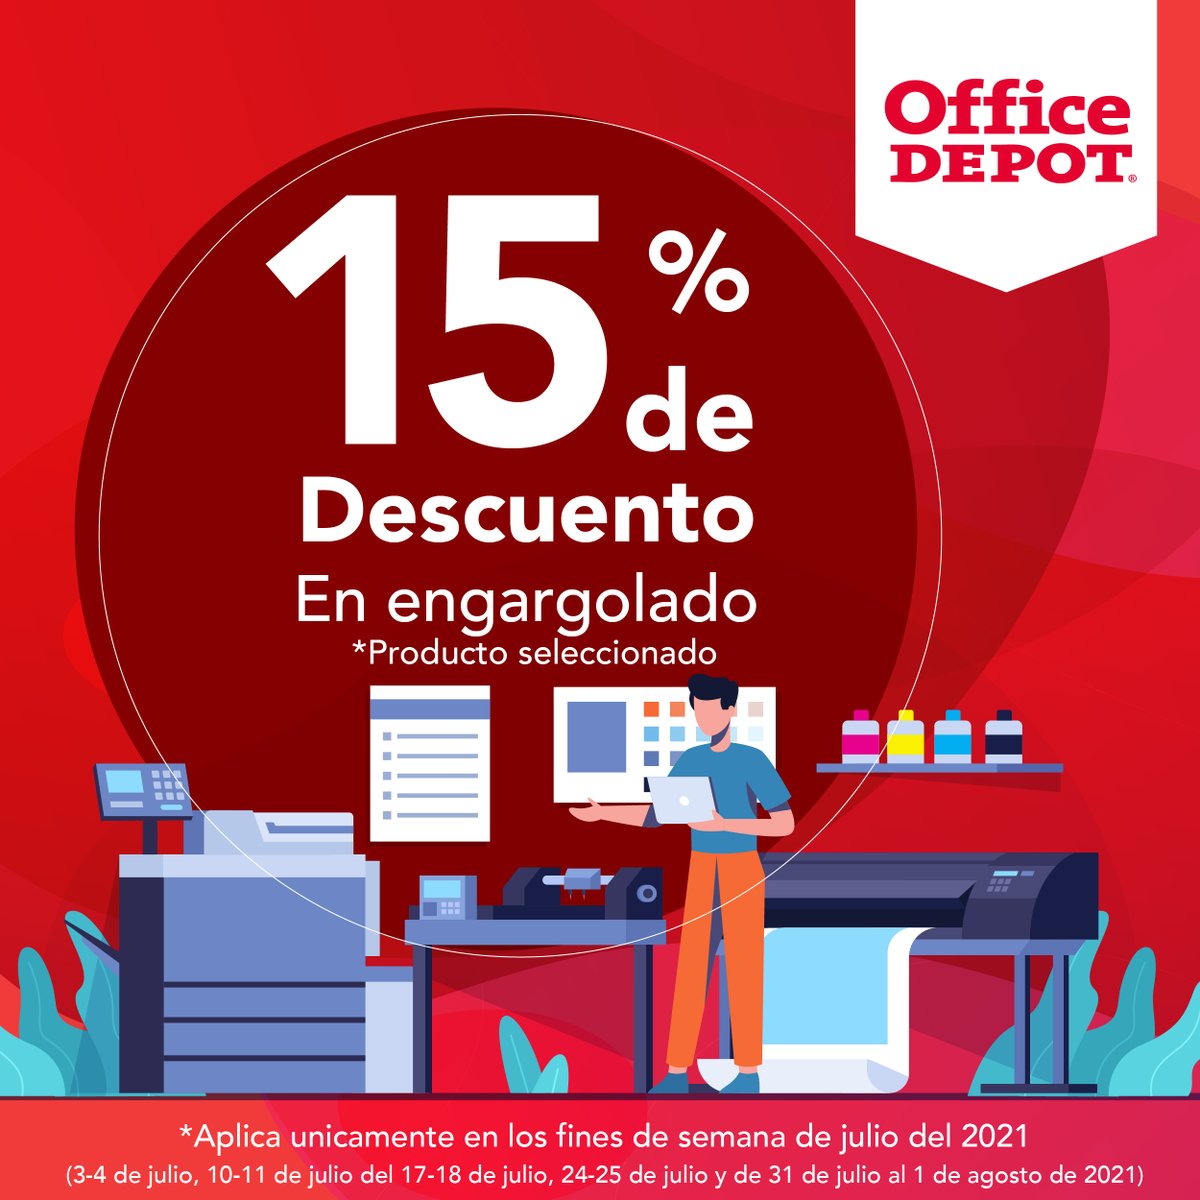 OfficeDepot Honduras в Twitter: „Aprovecha durante los fines de semana de  julio, tenemos promociones especiales en servicentro. ¡Ven a tu Office Depot  más cercano! Válido solo los fines de semana de julio